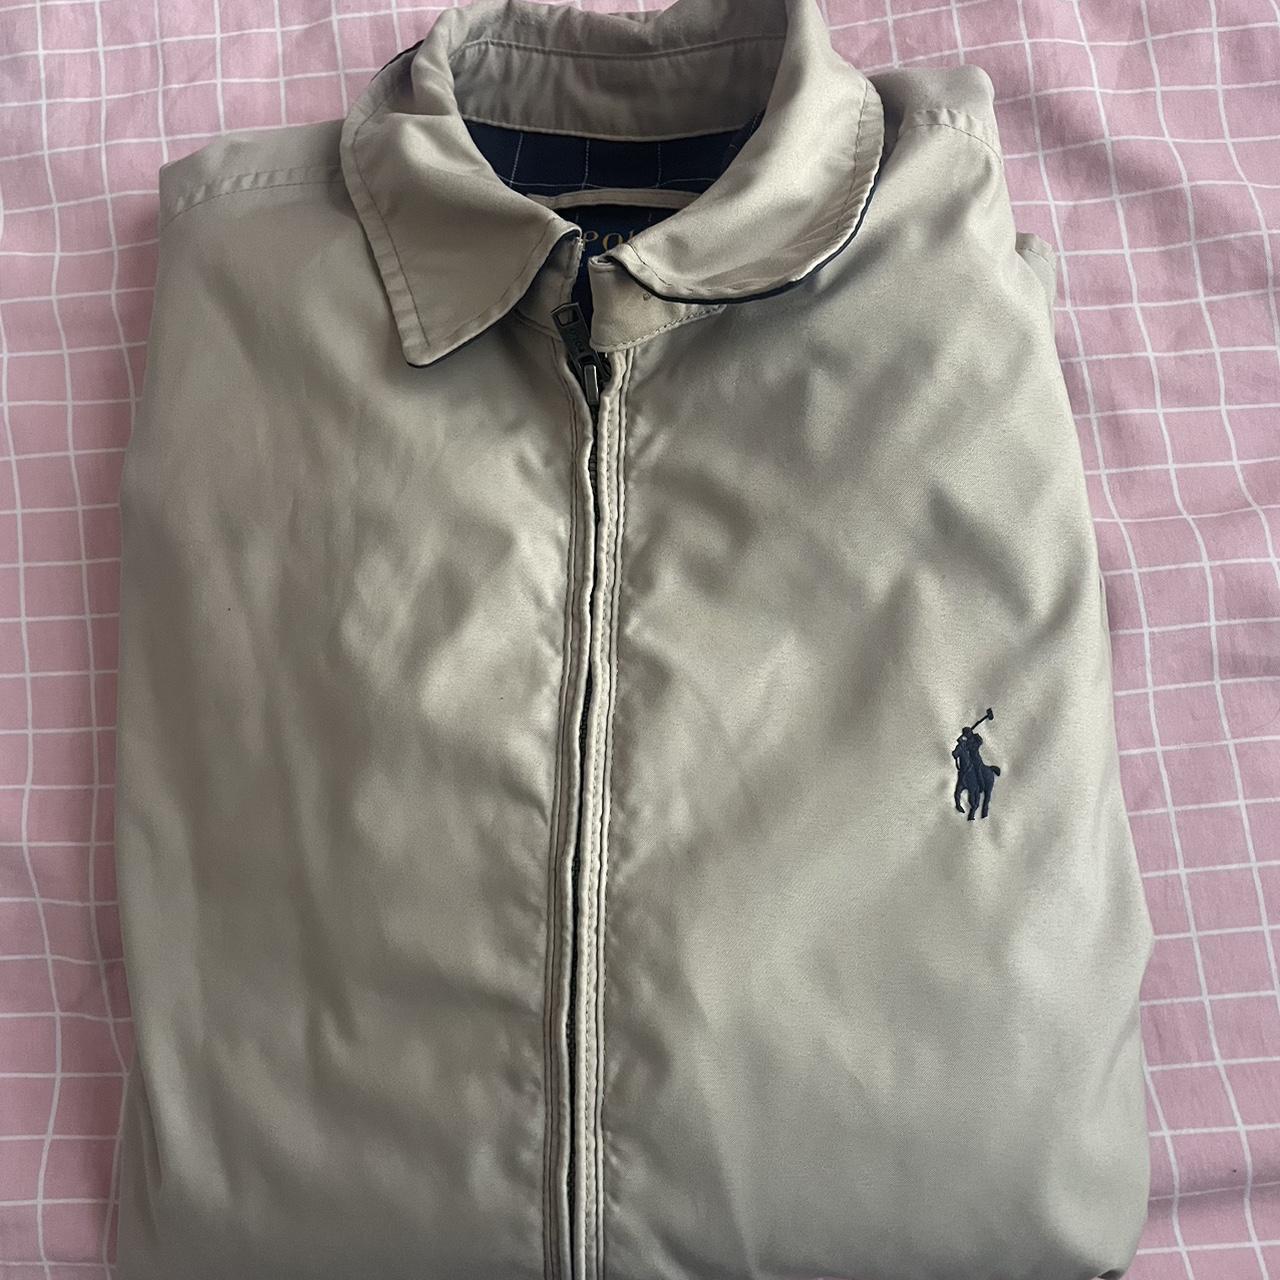 Small Ralph Lauren khaki jacket for sale! It is in... - Depop